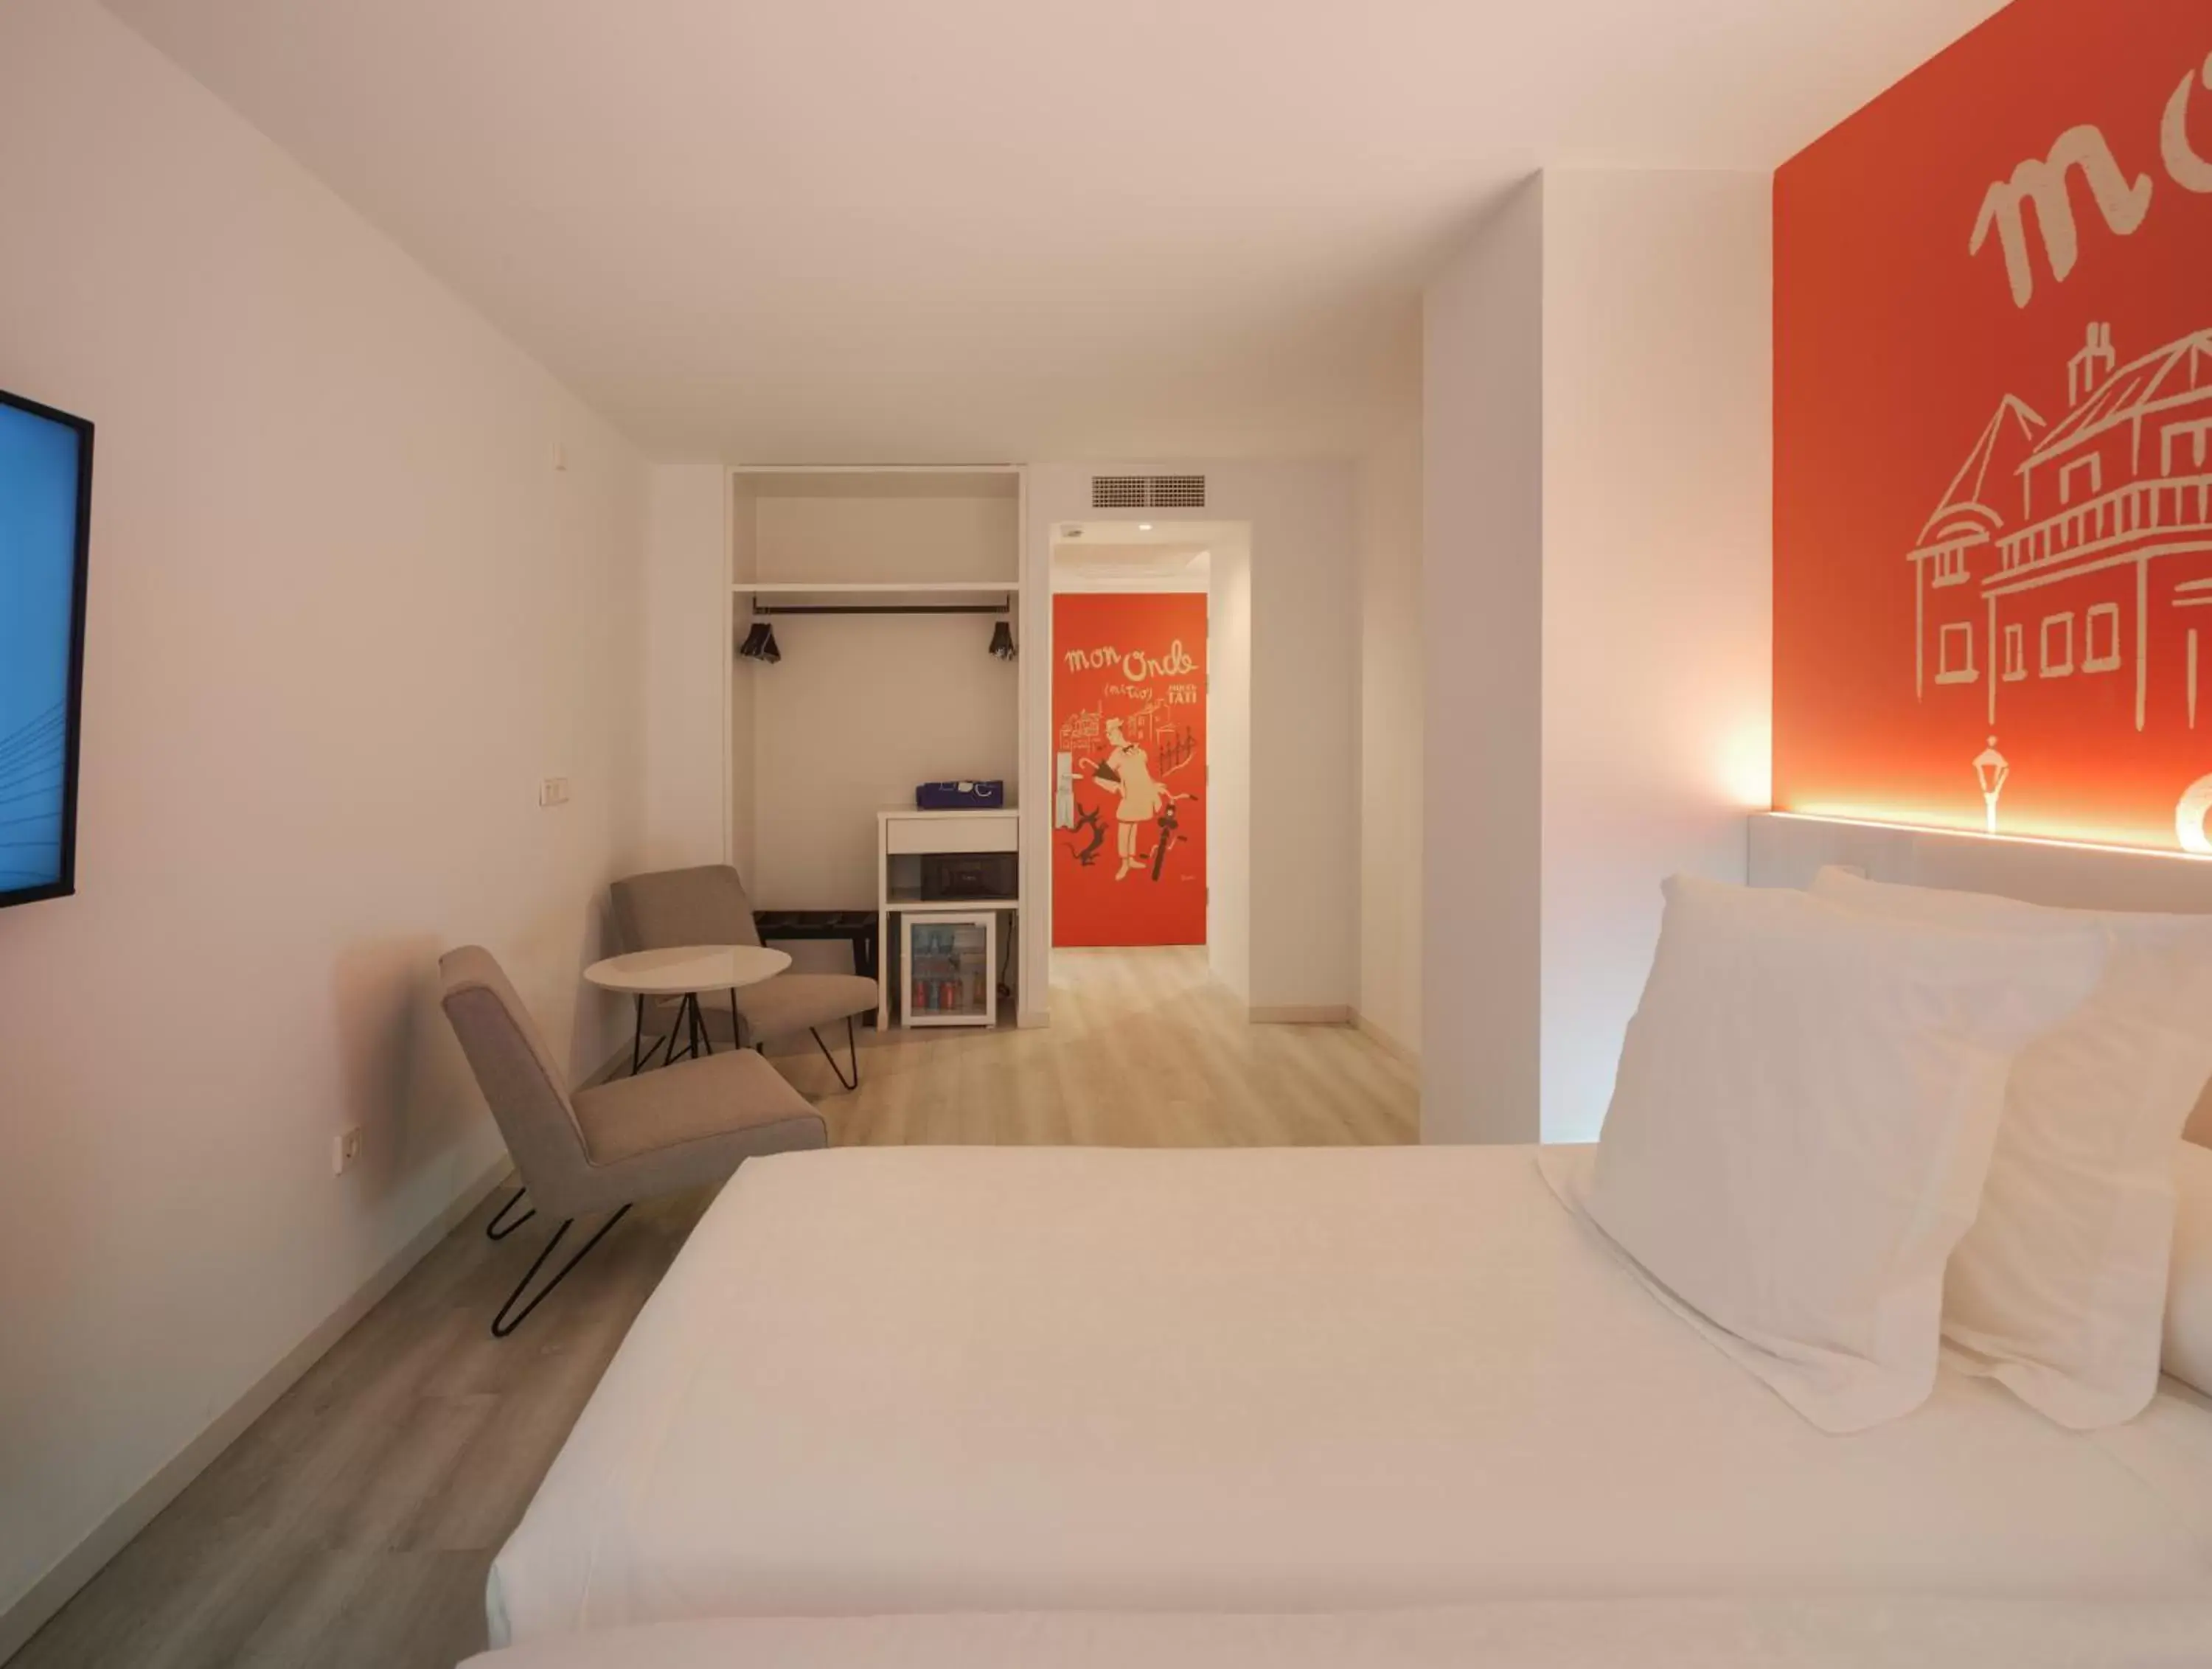 Bedroom in Dormirdcine Alicante